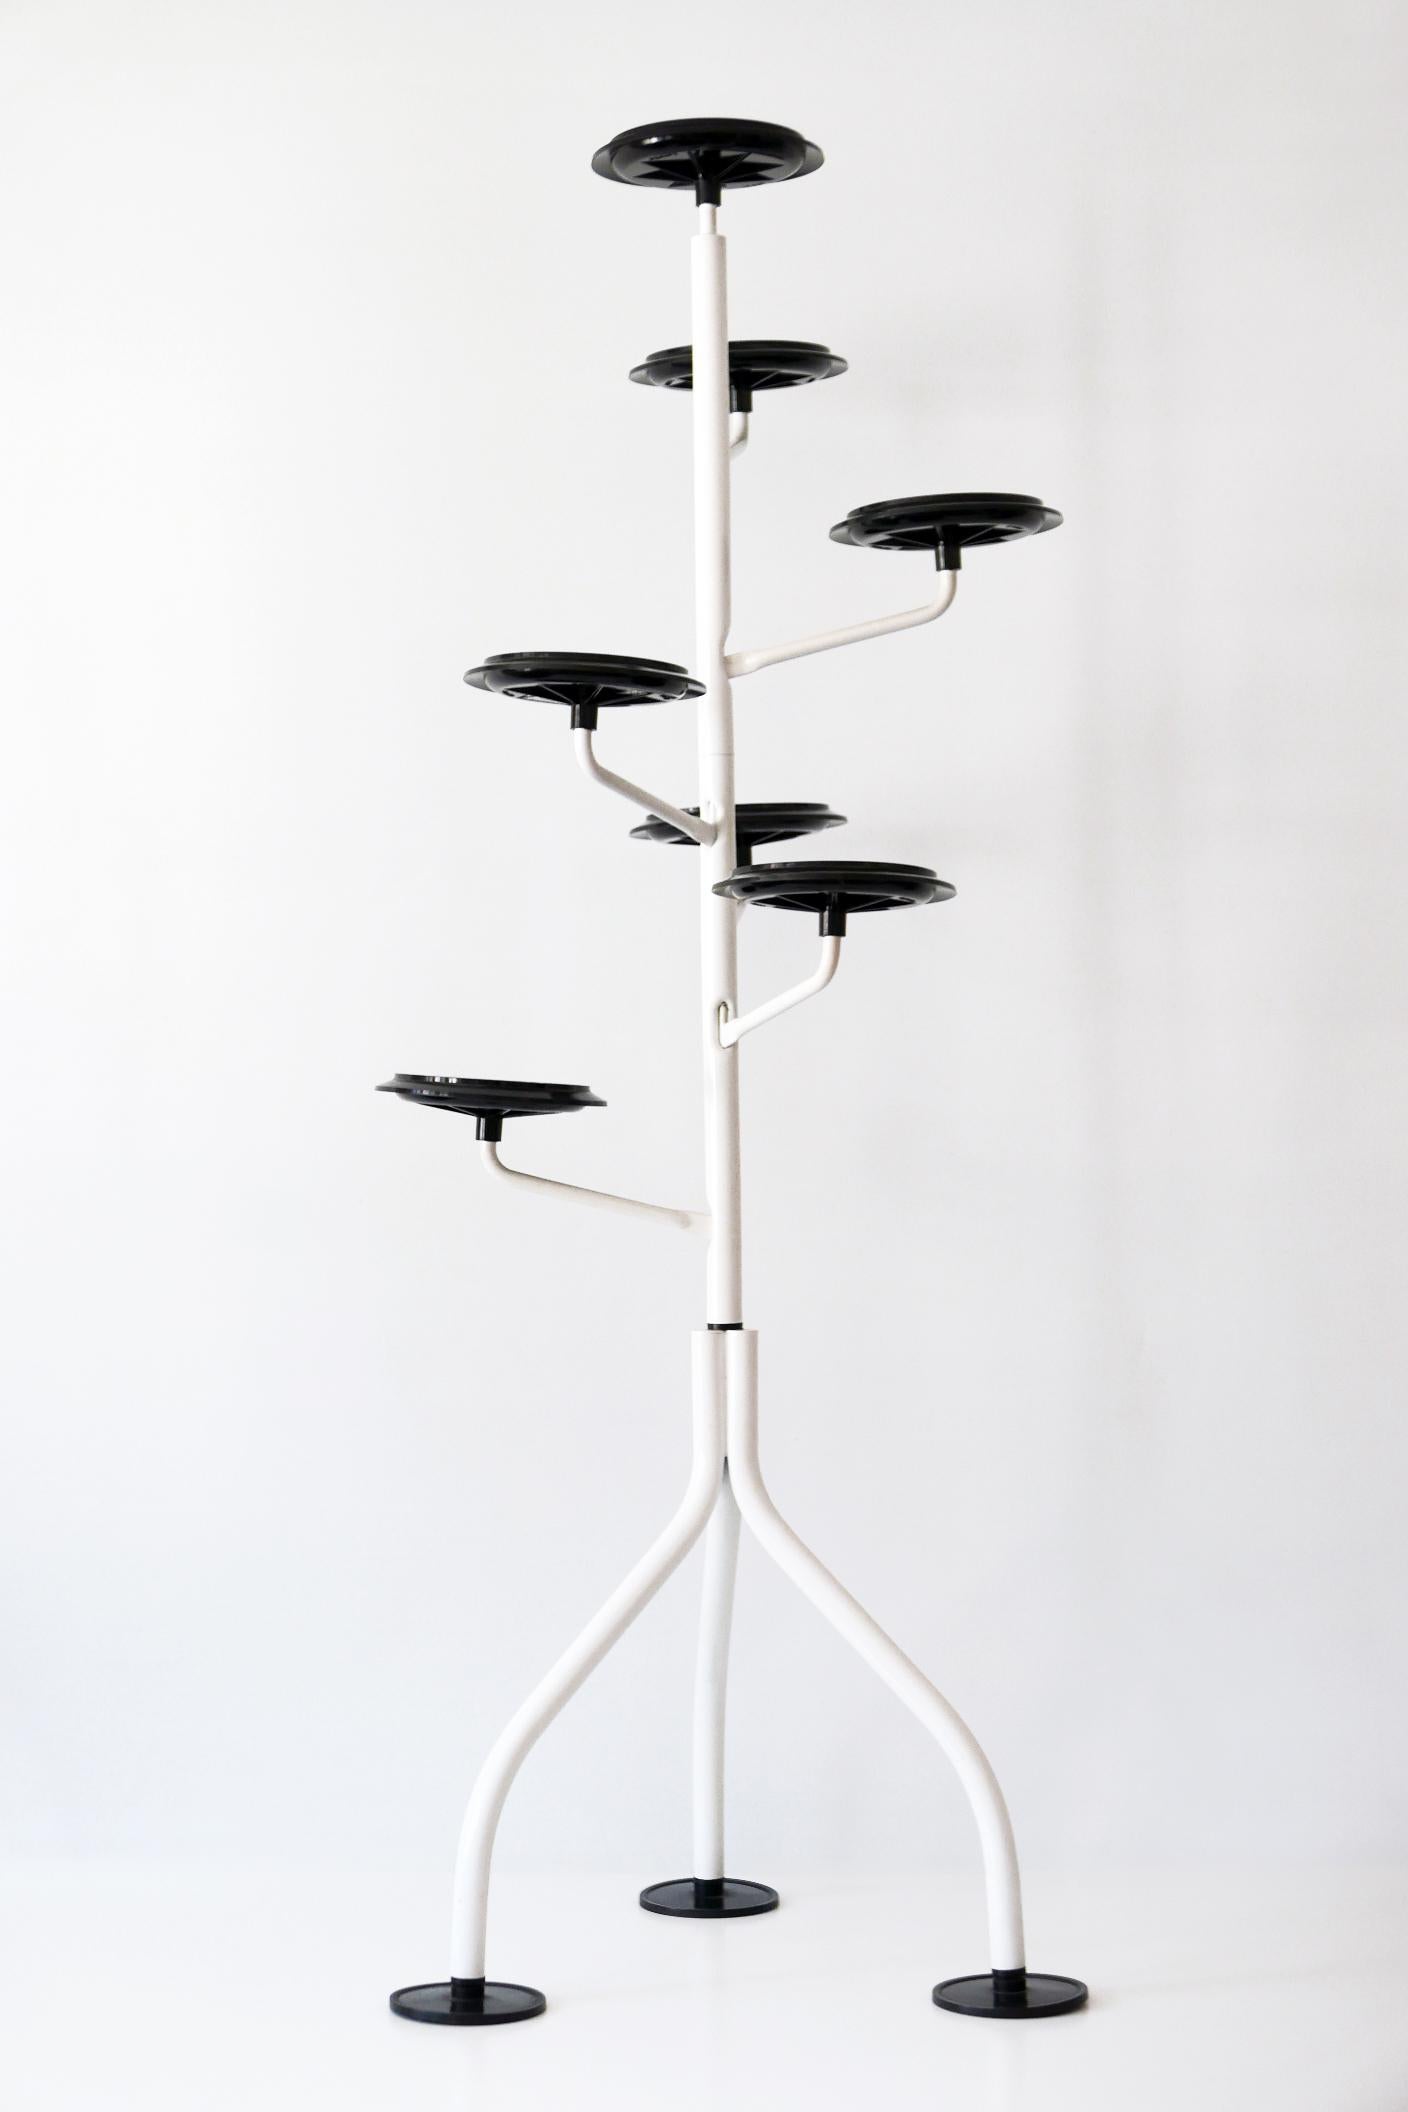 Frühe Ausgabe. Demontierbarer Pflanzkübel oder Blumentopfständer 'Albero' in Form eines Baumes. Entworfen von Achille Castiglioni 1983 für Zanotta, Italien. Gezeichnet: Zanotta Italien.

Horizontal kann jeder Arm um 120 Grad gedreht werden, um